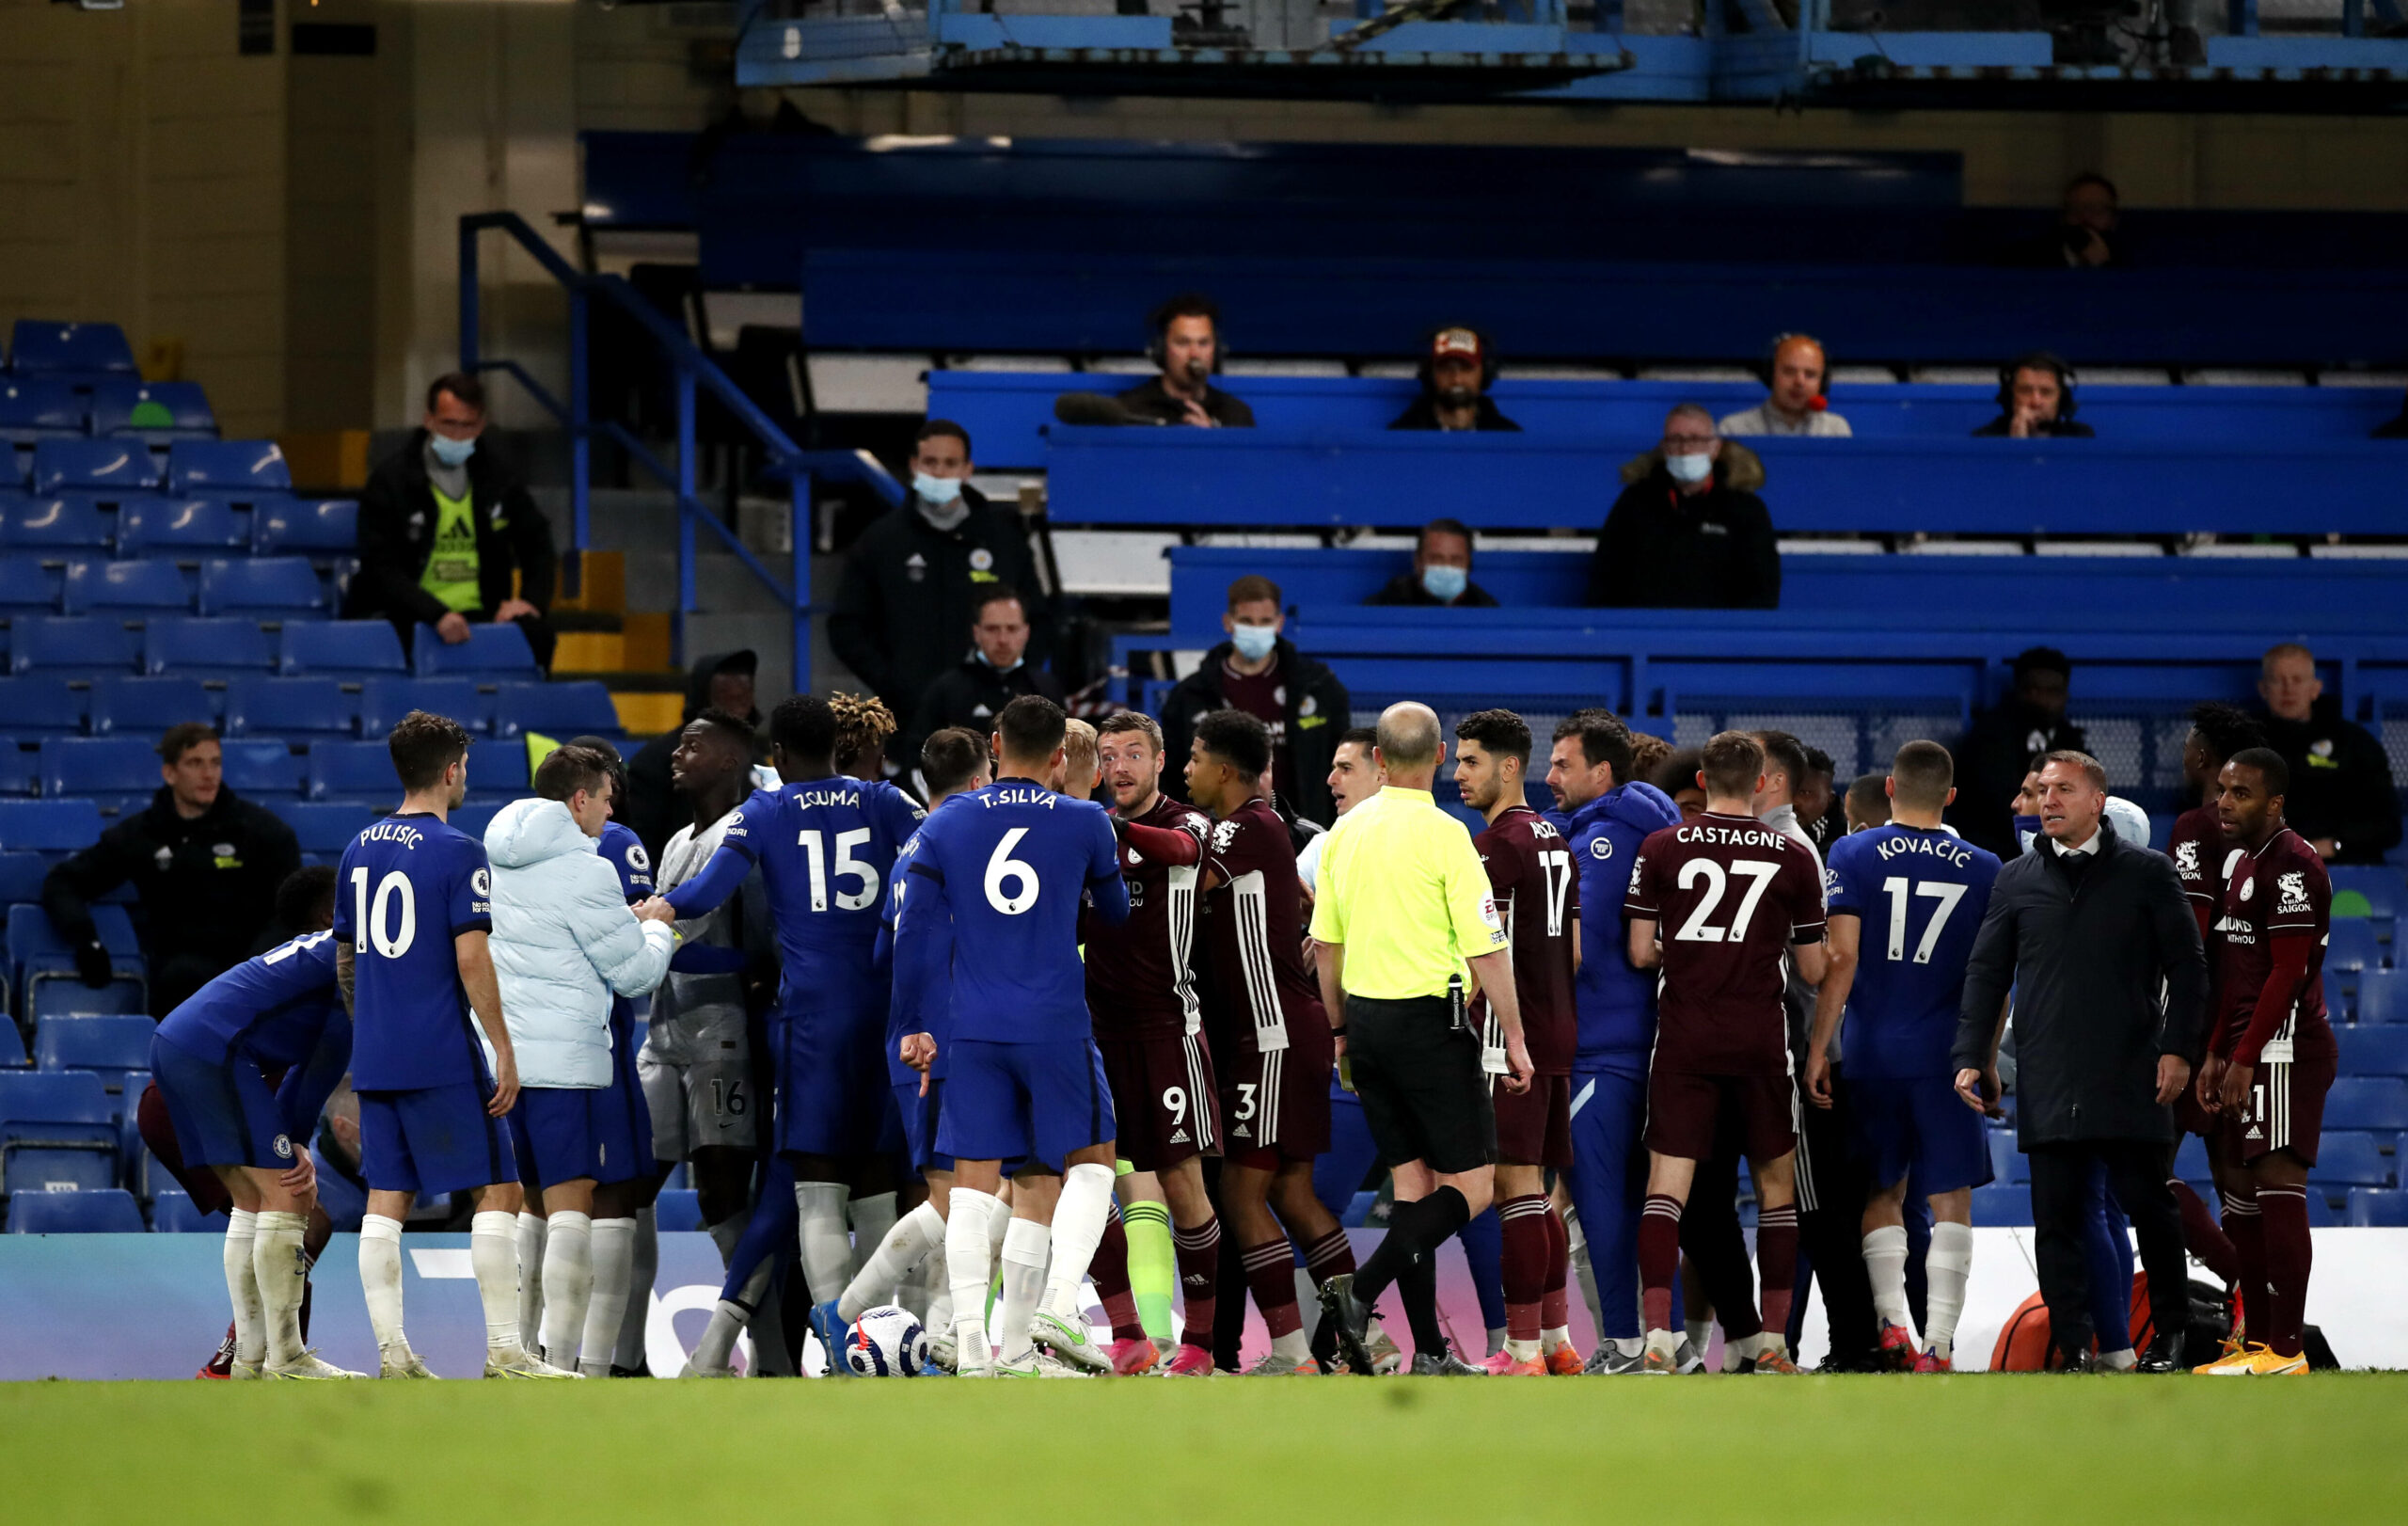 Nach Rudelbildung: Chelsea und Leicester von FA angeklagt